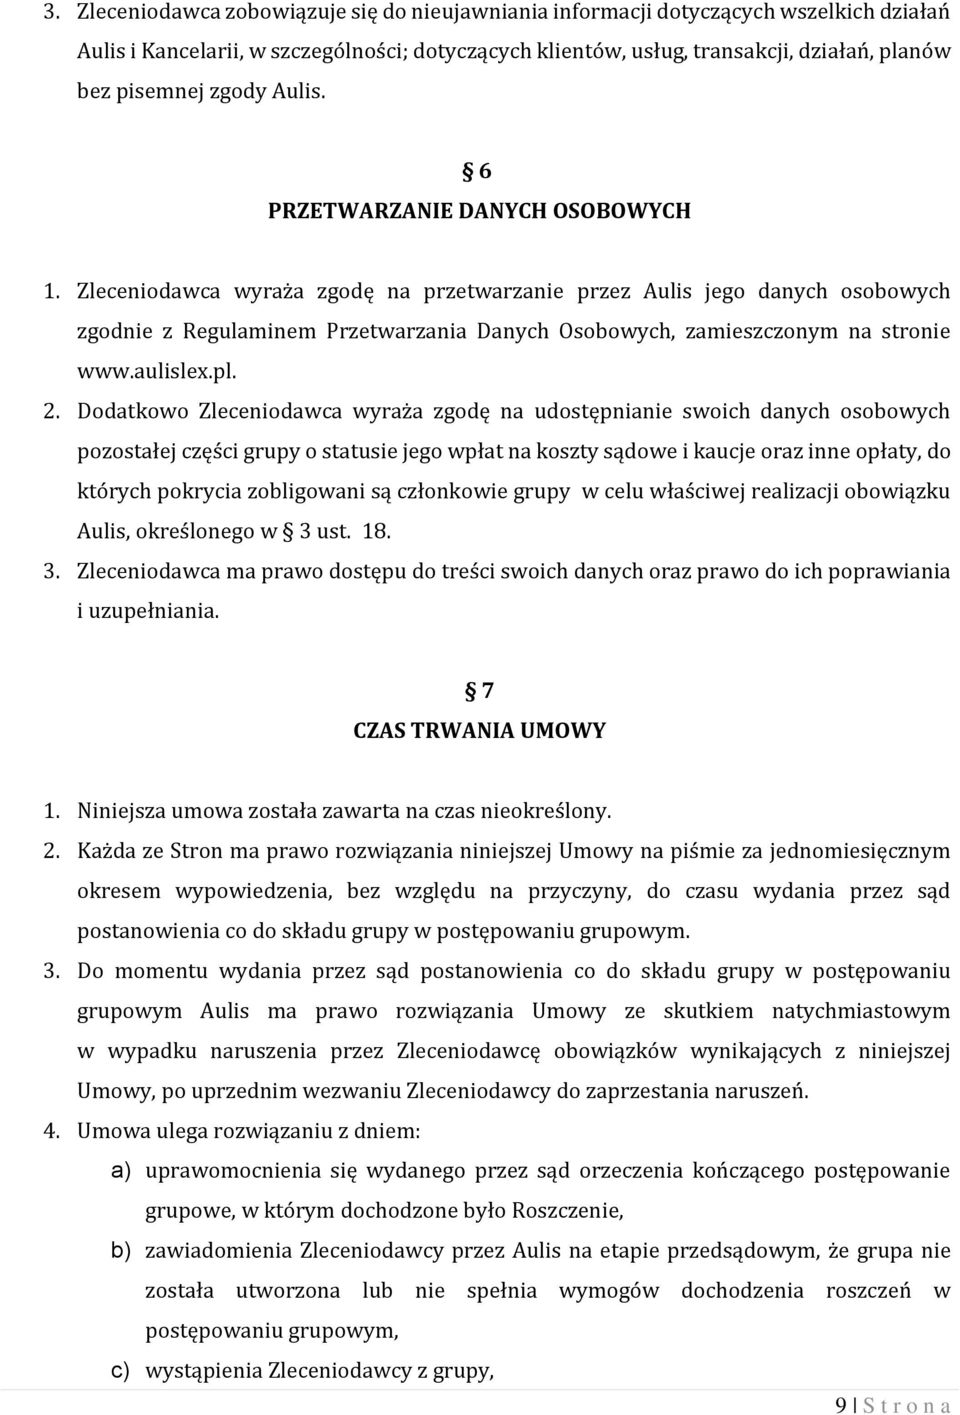 Zleceniodawca wyraża zgodę na przetwarzanie przez Aulis jego danych osobowych zgodnie z Regulaminem Przetwarzania Danych Osobowych, zamieszczonym na stronie www.aulislex.pl. 2.